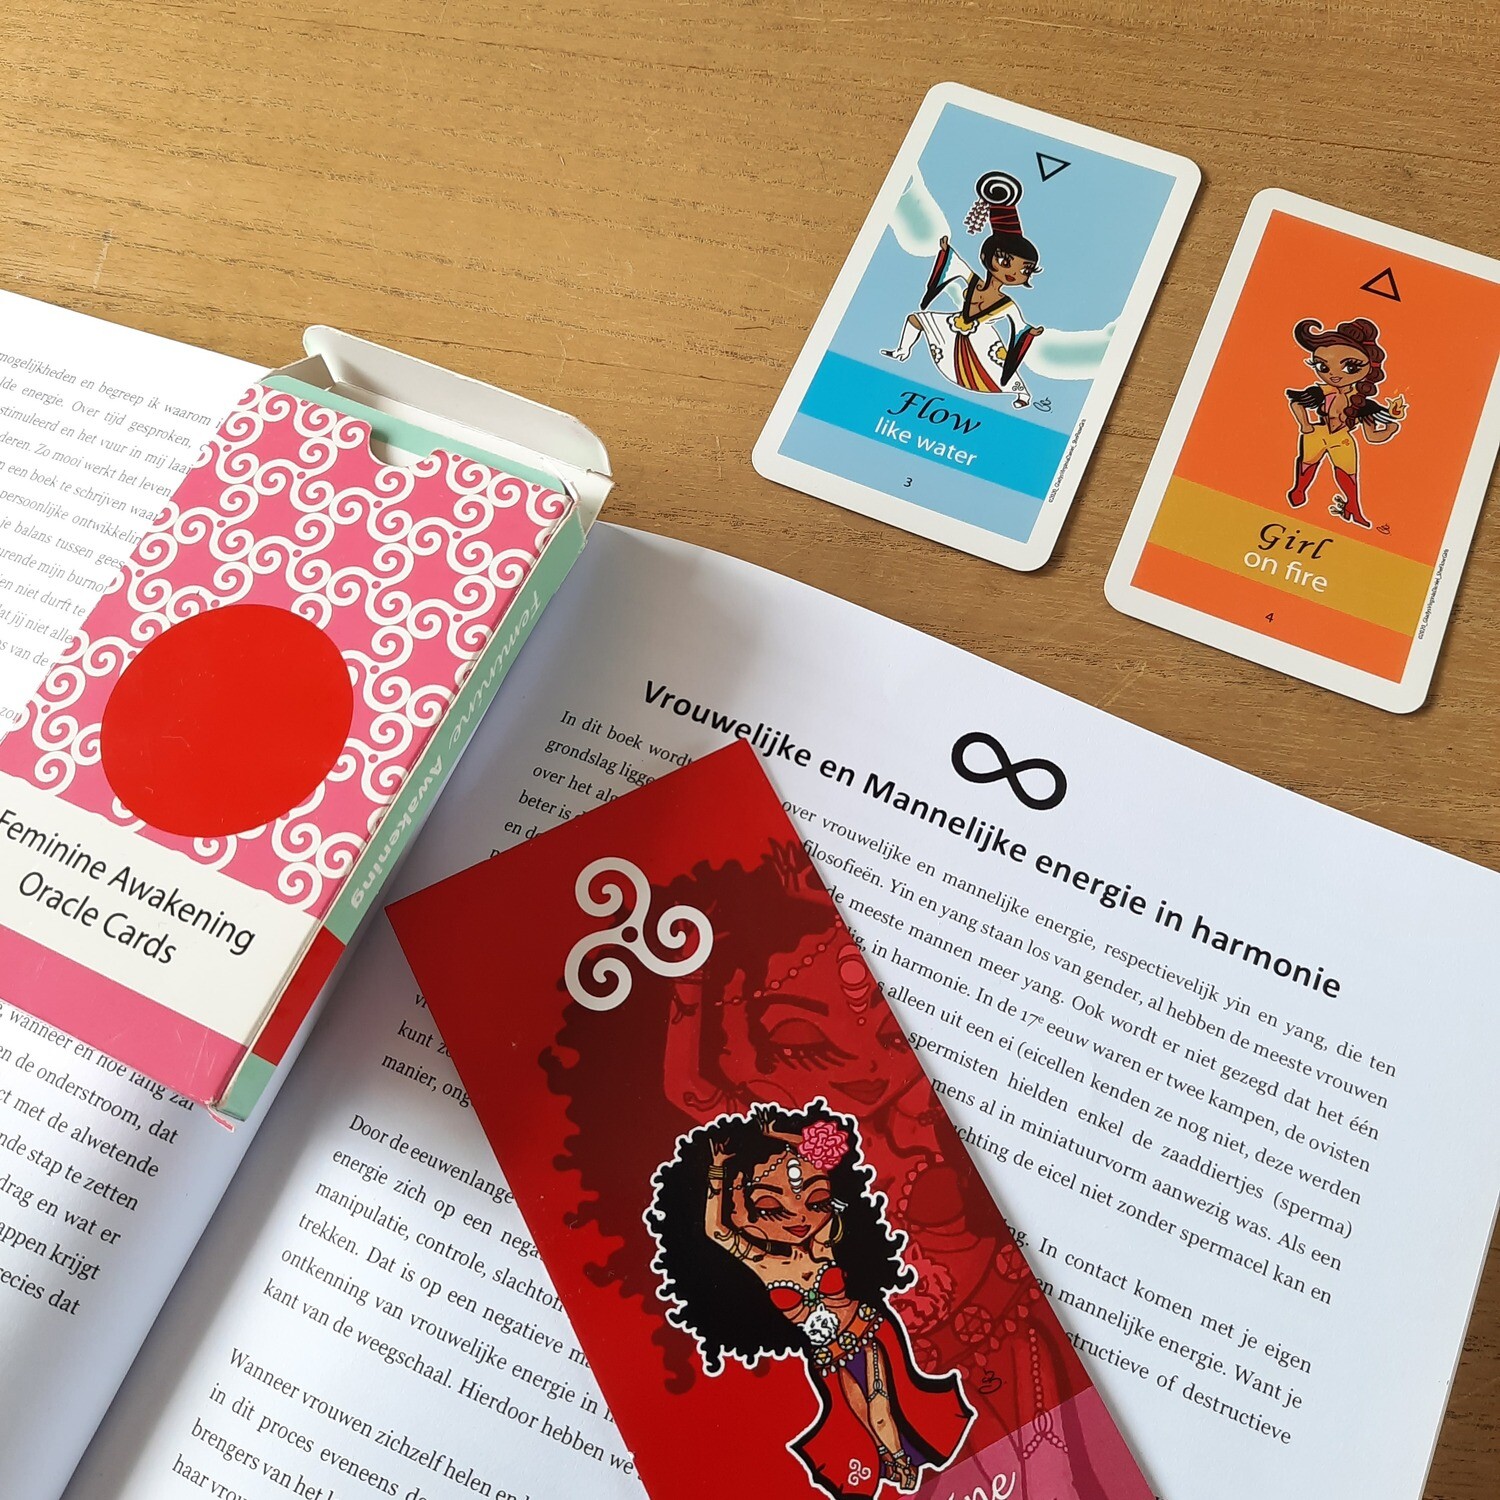 Handboek Orakelkaarten: Jij bent Perfect.
Ook los van de kaarten te gebruiken voor je persoonlijke ontwikkeling.